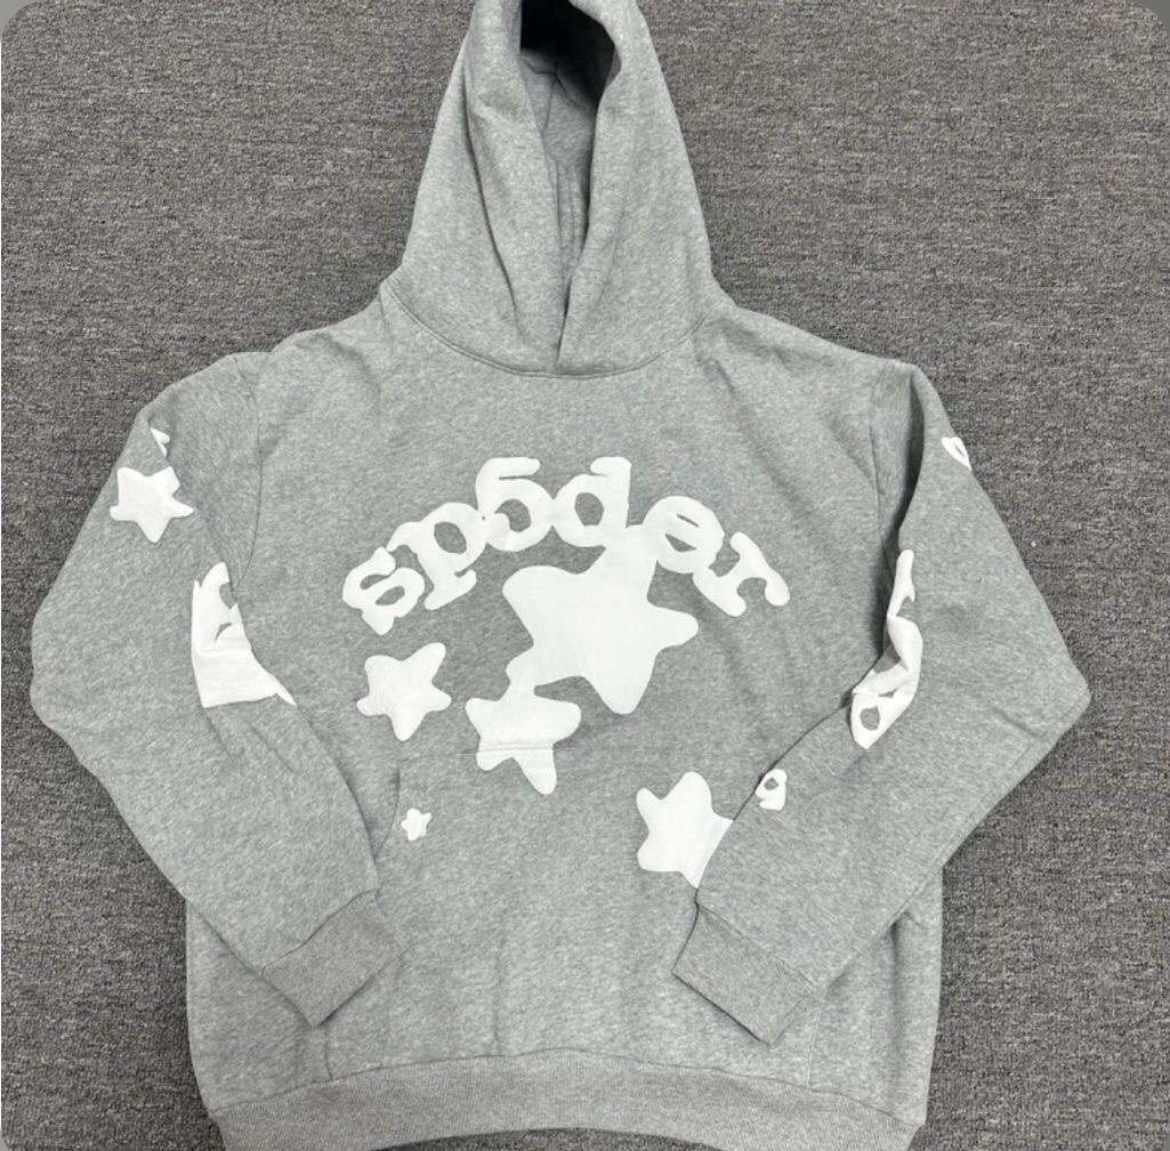 Grey Sp5der hoodie